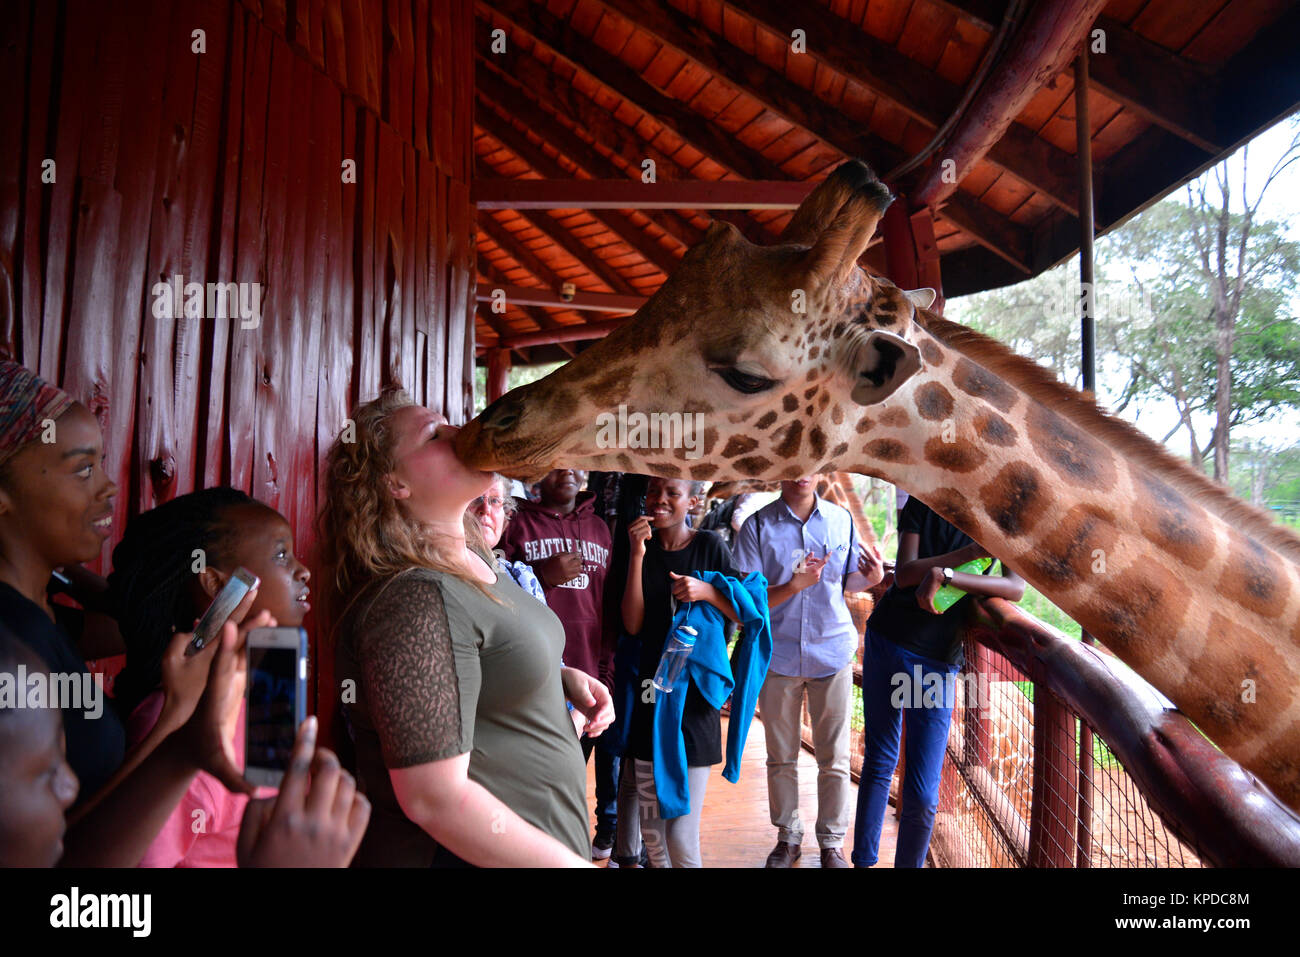 Kenia ist ein hervorragendes Reiseziel in Ostafrika. Berühmt für die freilebenden Tiere und wildwachsenden Pflanzen und ihrer natürlichen Schönheit. Giraffe Manor, Nairobi, Kenia. Stockfoto